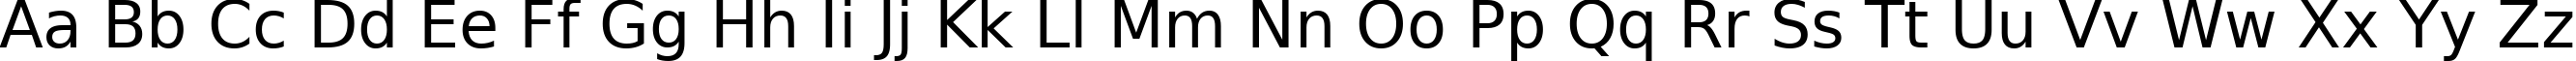 Пример написания английского алфавита шрифтом DejaVu Sans